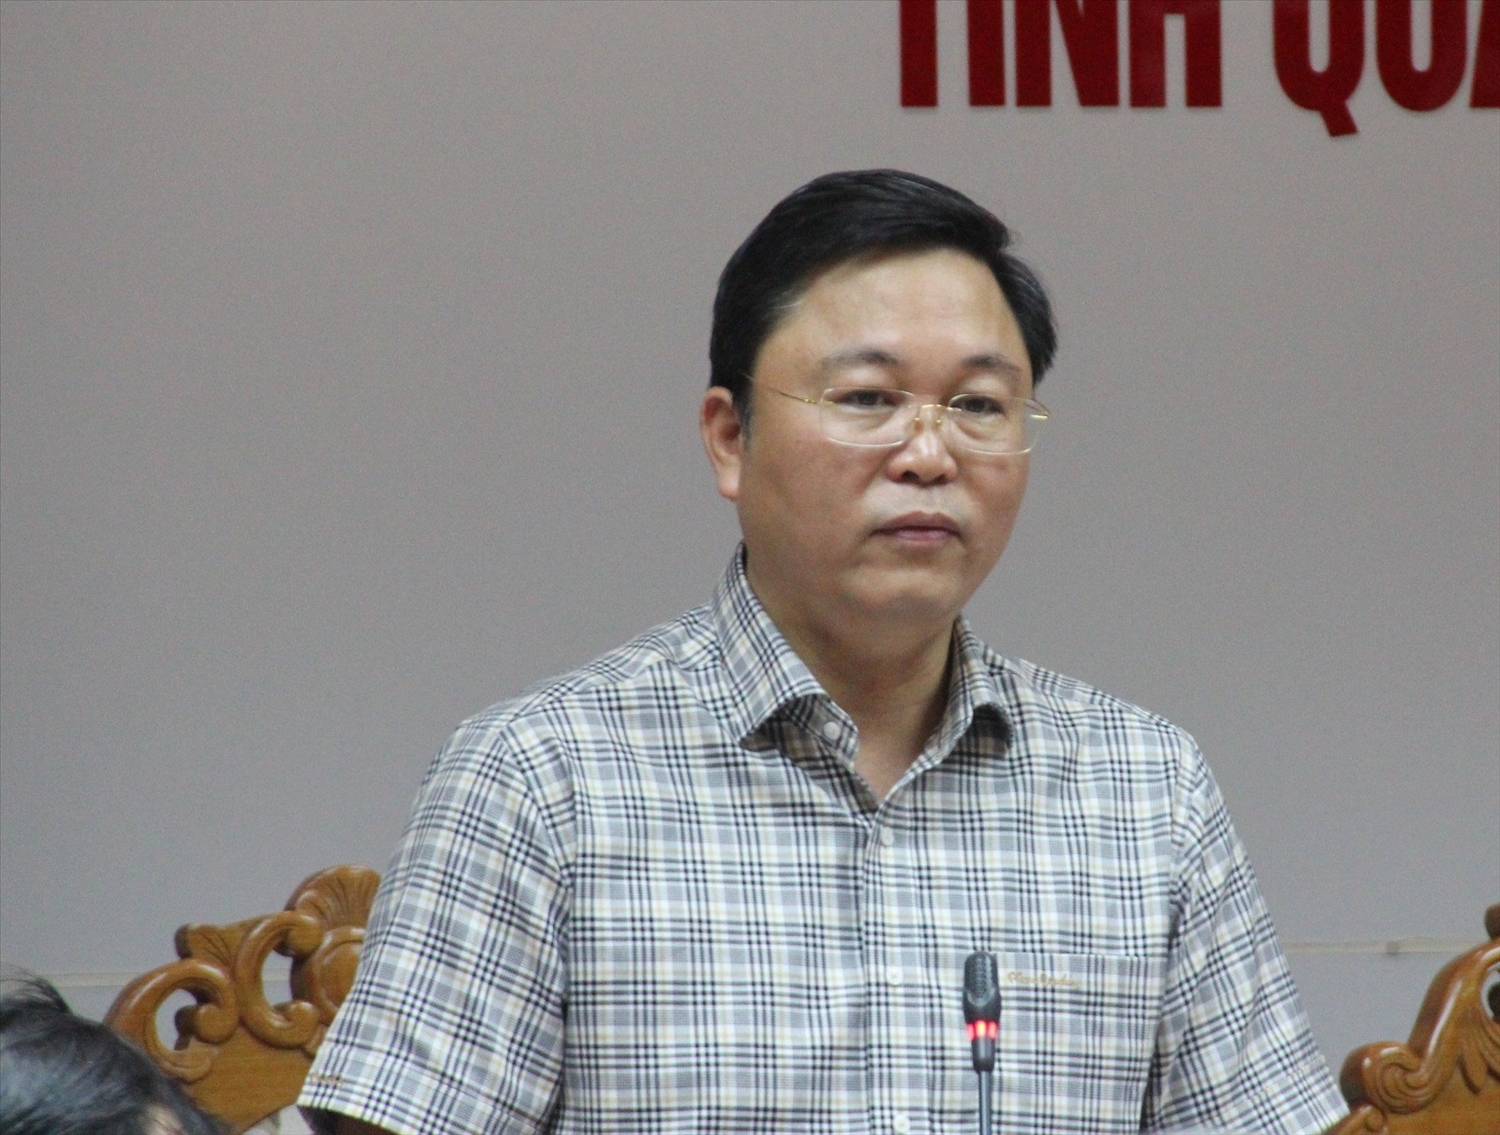 Miễn nhiệm chức vụ Chủ tịch UBND tỉnh Quảng Nam đối với ông Lê Trí Thanh